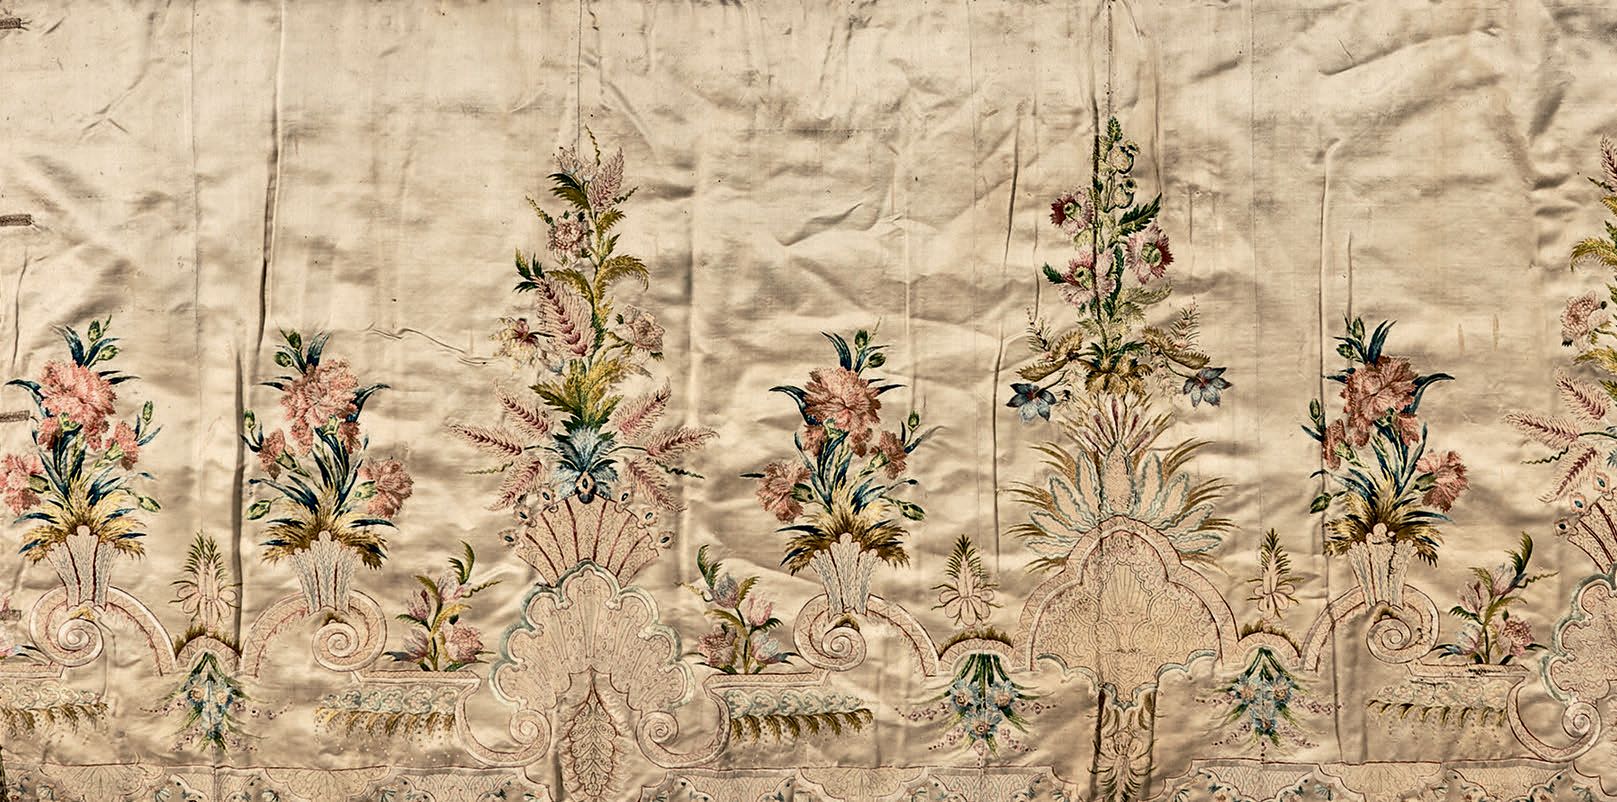 Null 一件刺绣婚纱裙或曼图亚在进行中，英国或意大利，18世纪，约1735-1740年。
象牙色丝缎上绣有多色丝，上面有美丽的洛可可式装饰，贝壳和飞檐支撑着大&hellip;